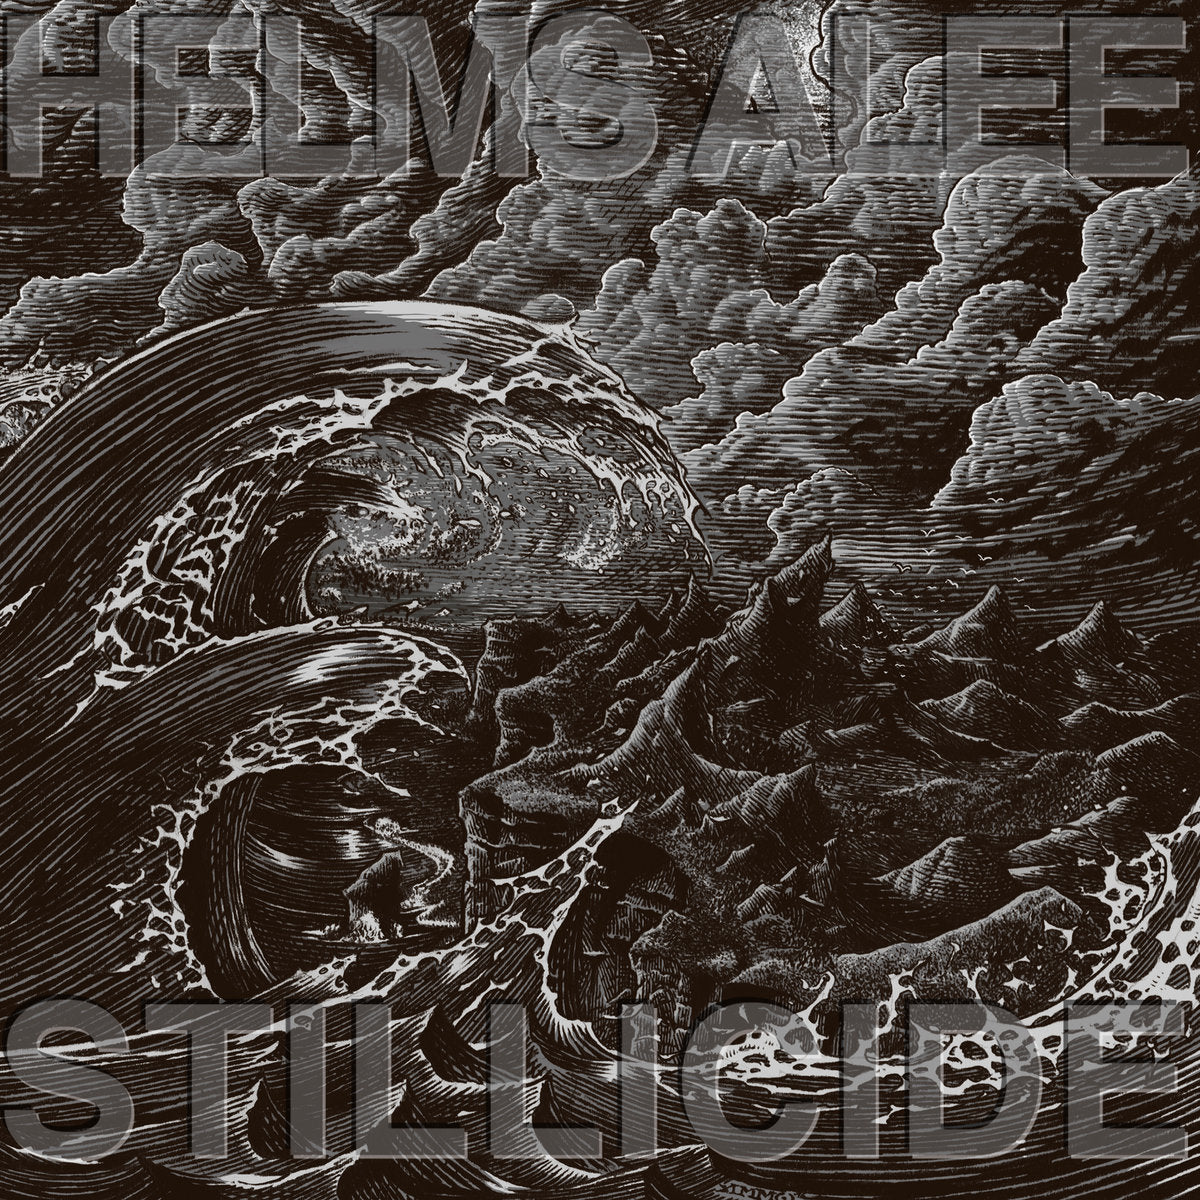 HELMS ALEE "Stillicide" LP